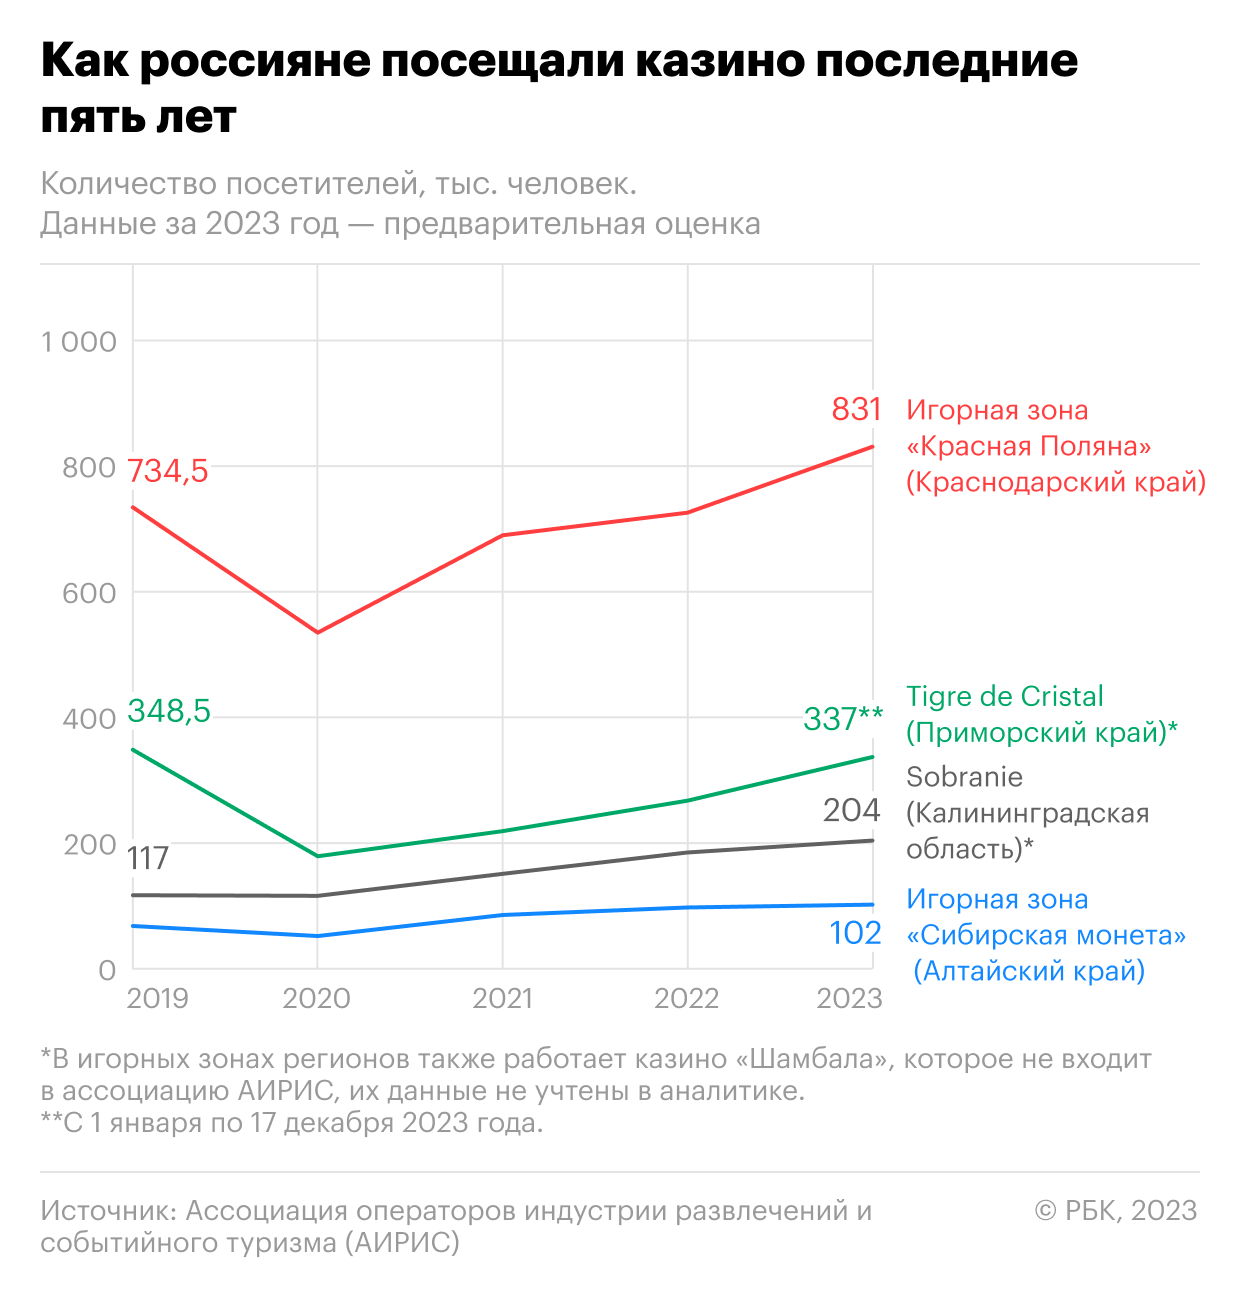 Как число посетителей казино в России достигло рекорда. Инфографика